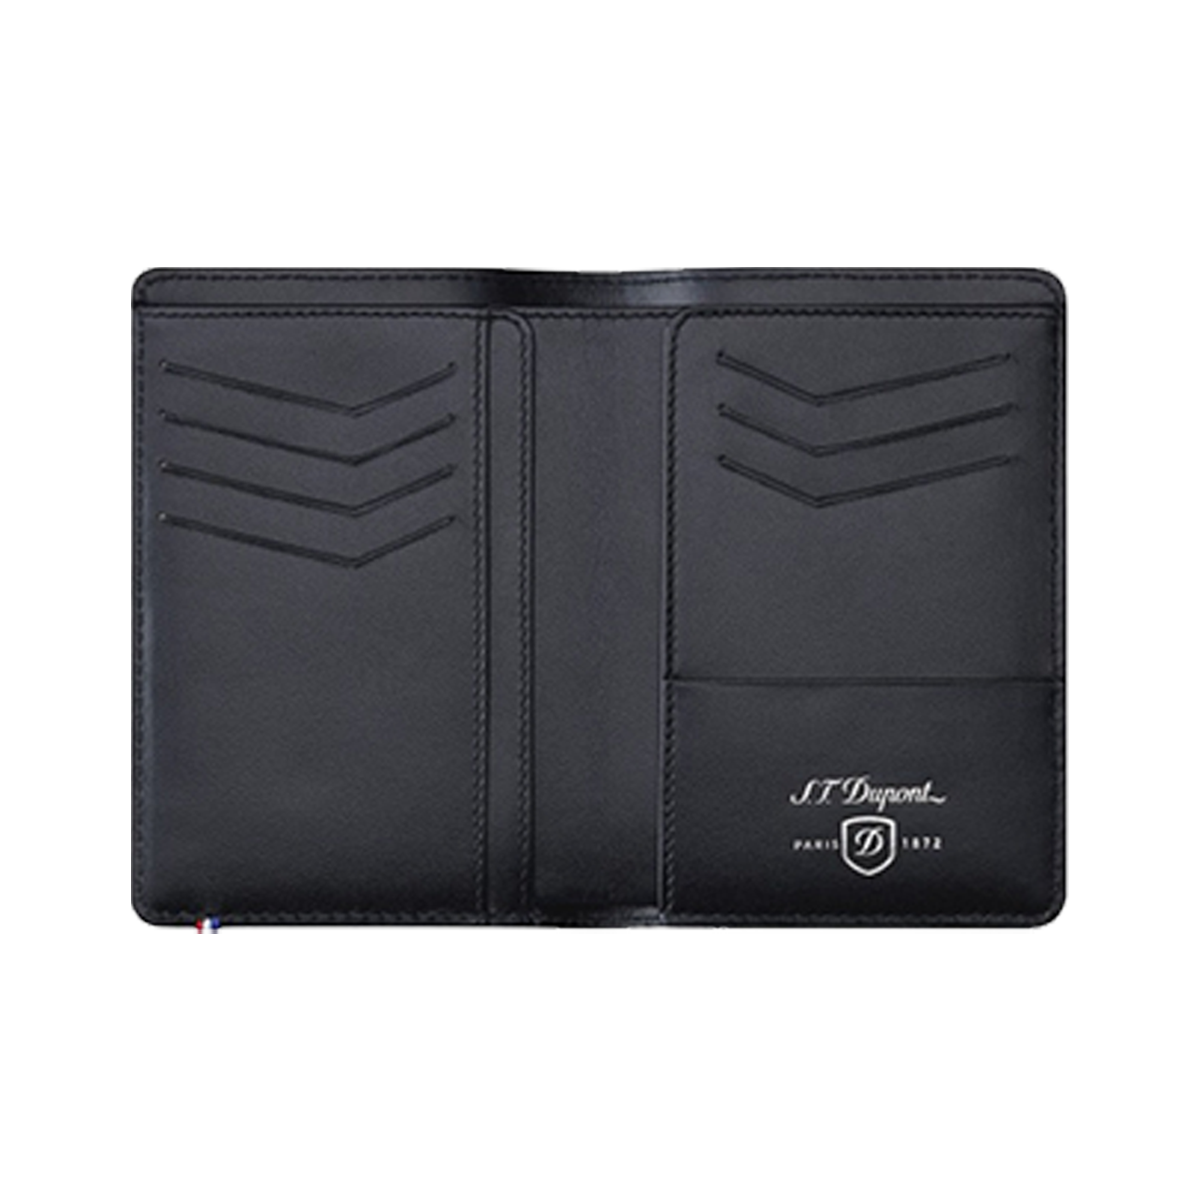 Портмоне Defi 170015 Цвет Чёрный Семь карманов для кредитных карт, RFID защита | S.T. Dupont